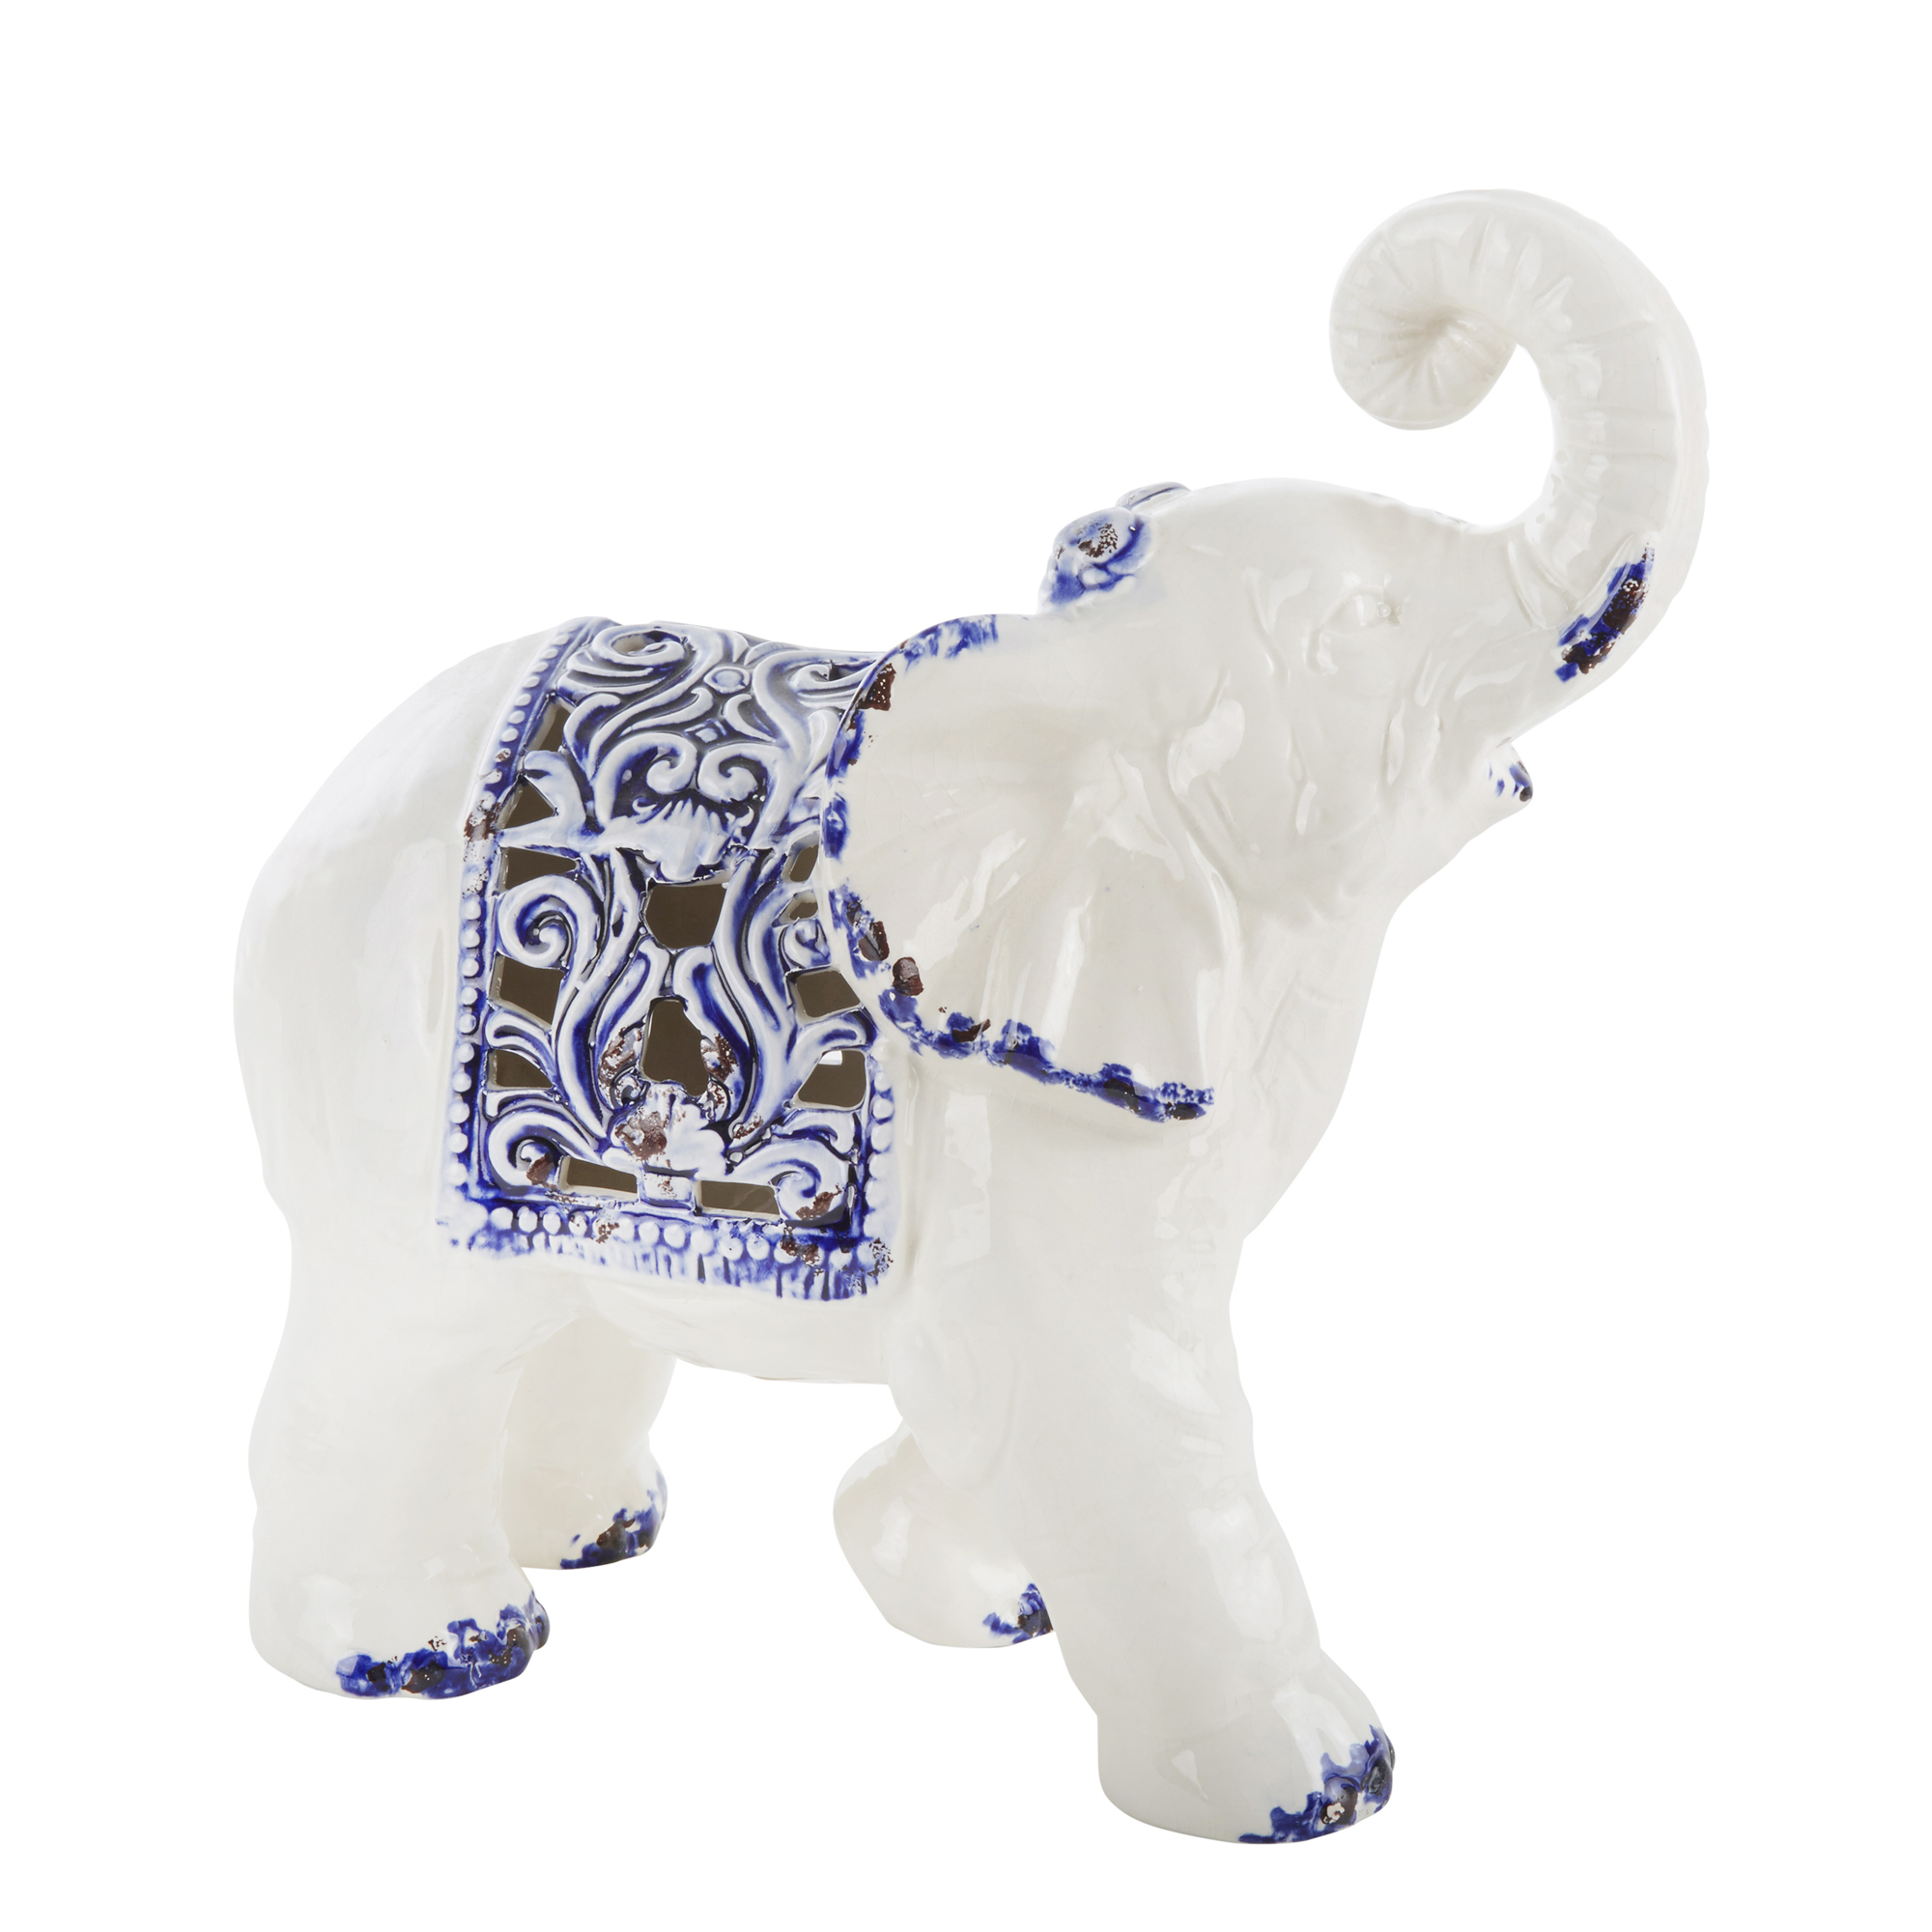 Sagebrook Home Blue And White Ceramic Elephant 11650 604007496790 | eBay